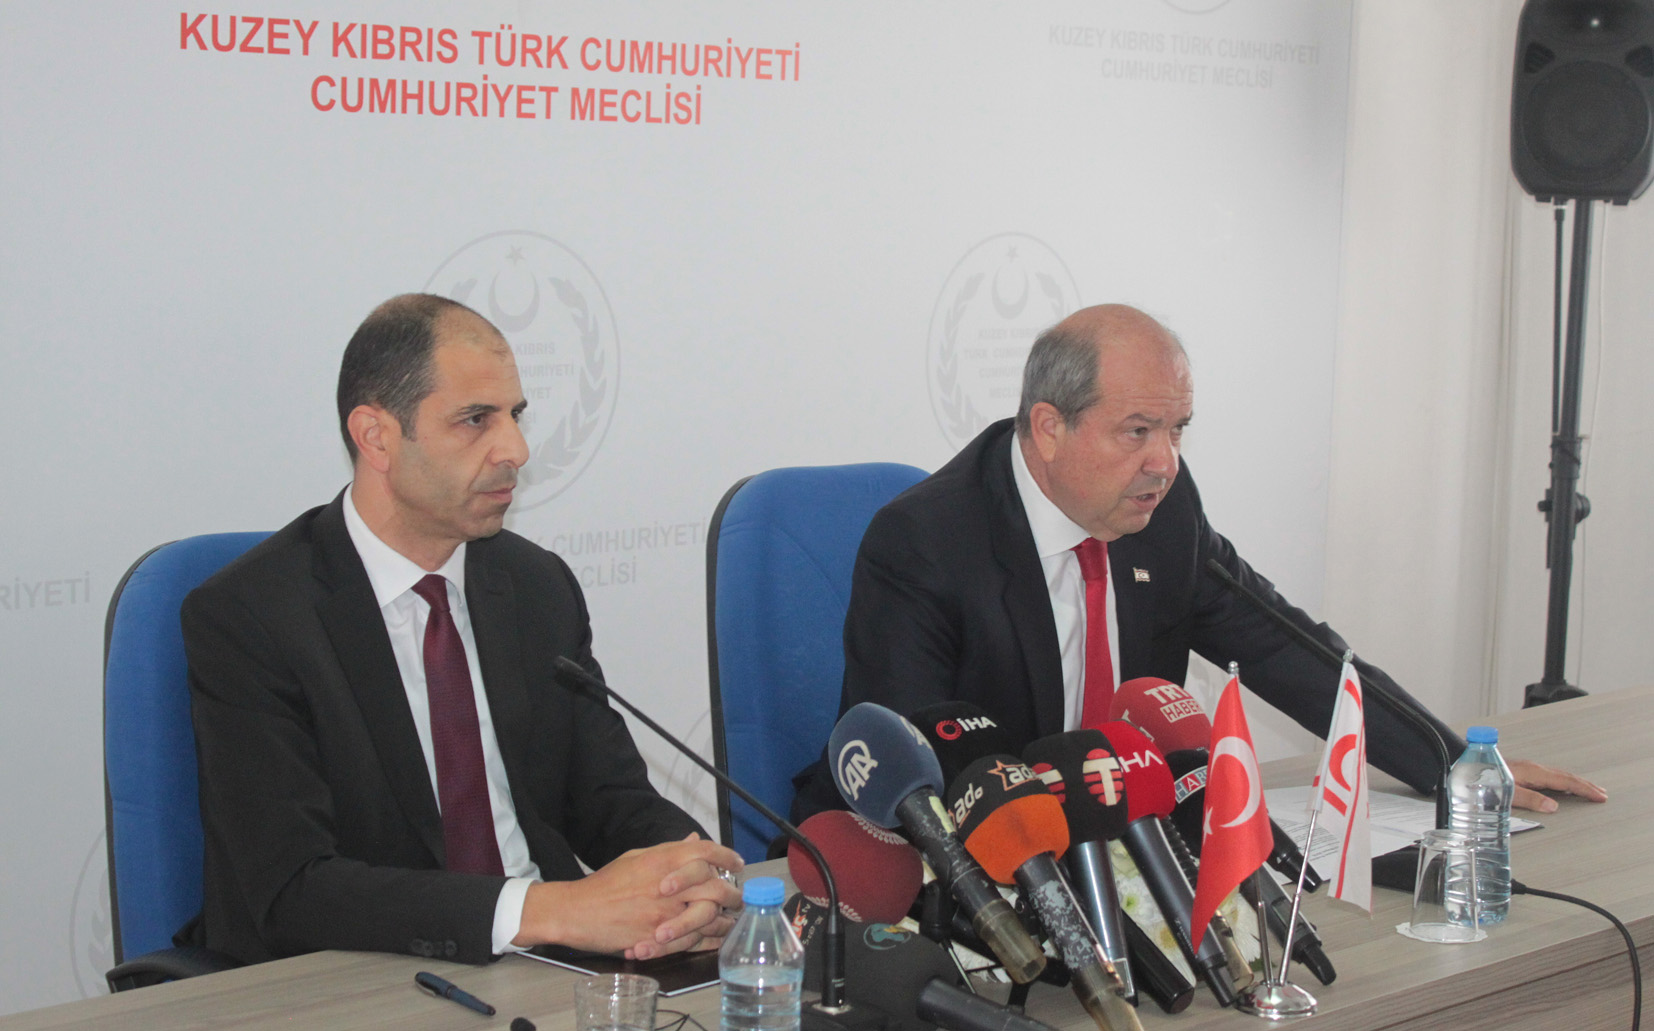 Tatar: Yeni hükümet hayırlı olsun. Kıbrıs konusunda Dışişleri Bakanı Özersay’a güveniyoruz